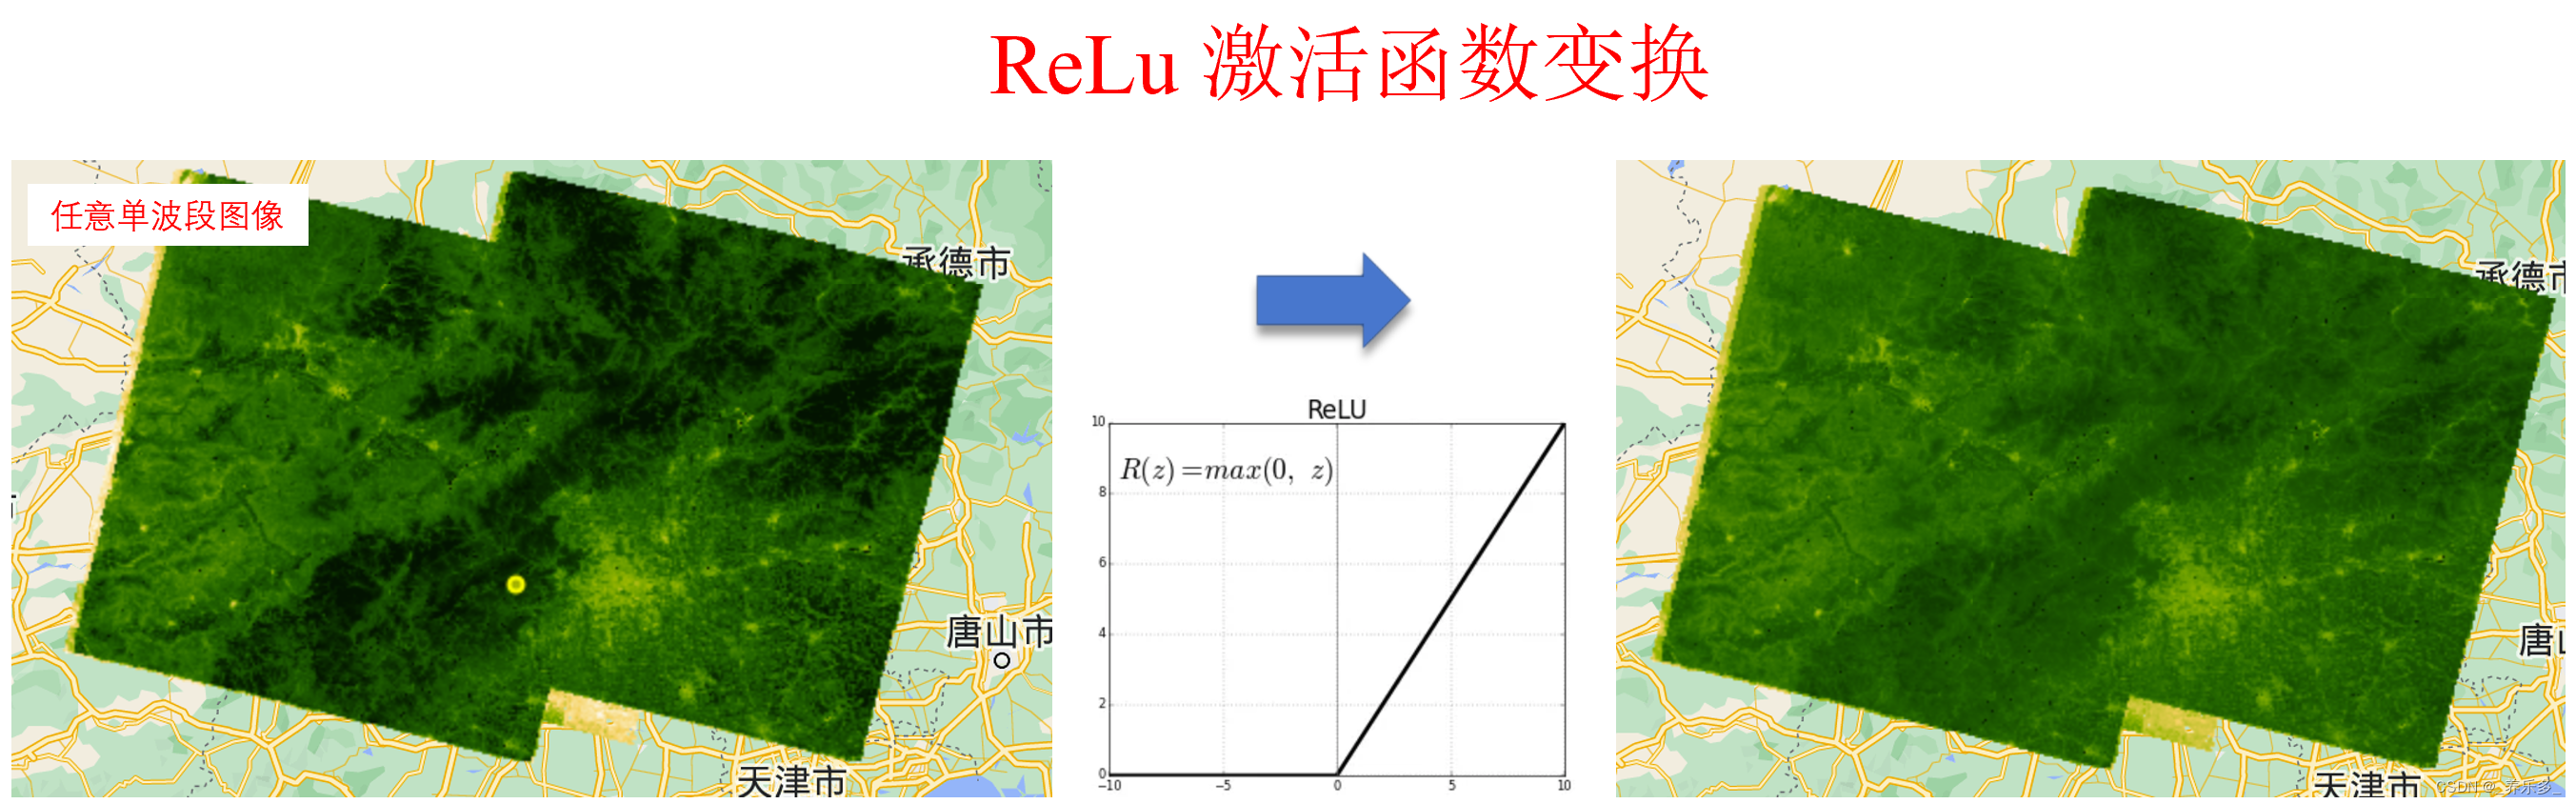 GEE：使用ReLu激活函数对单波段图像进行变换（以NDVI为例）